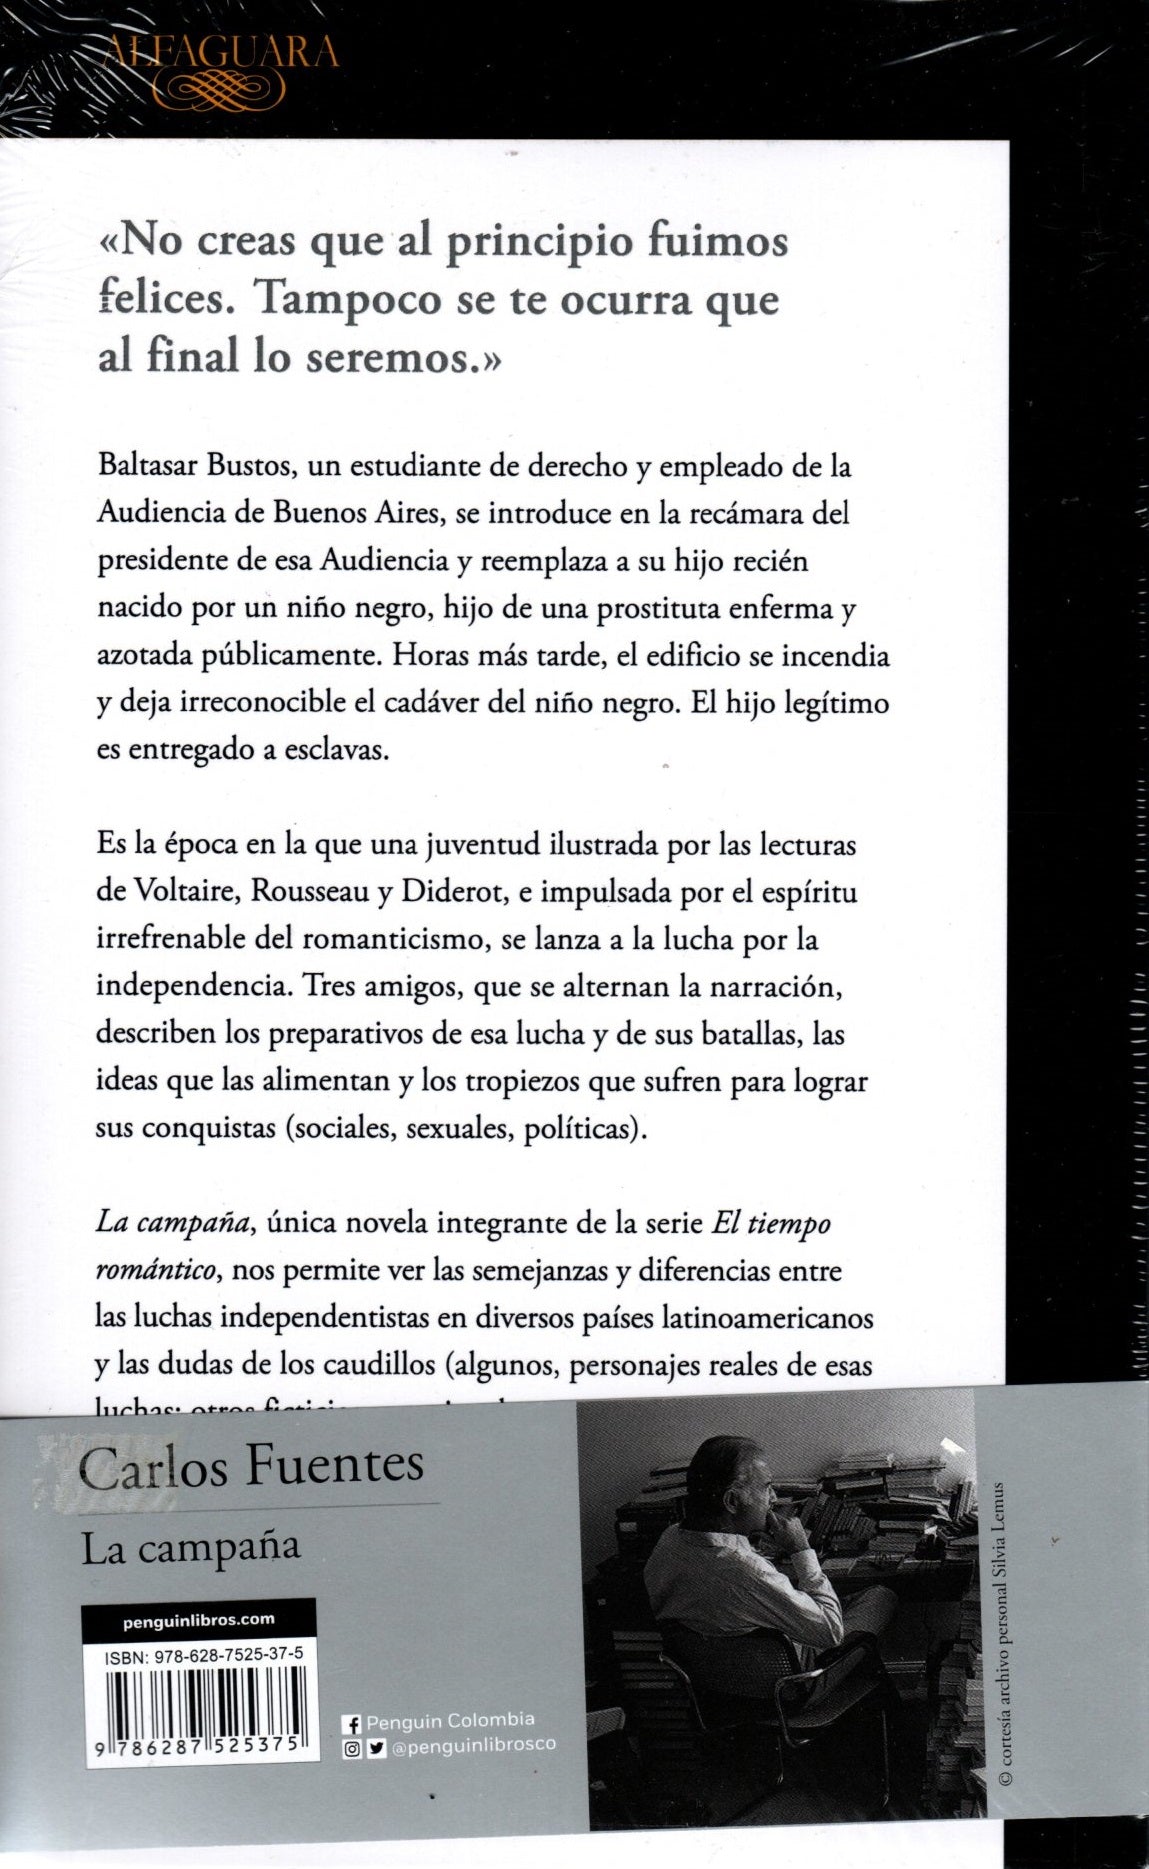 Libro Carlos Fuentes - La Campaña